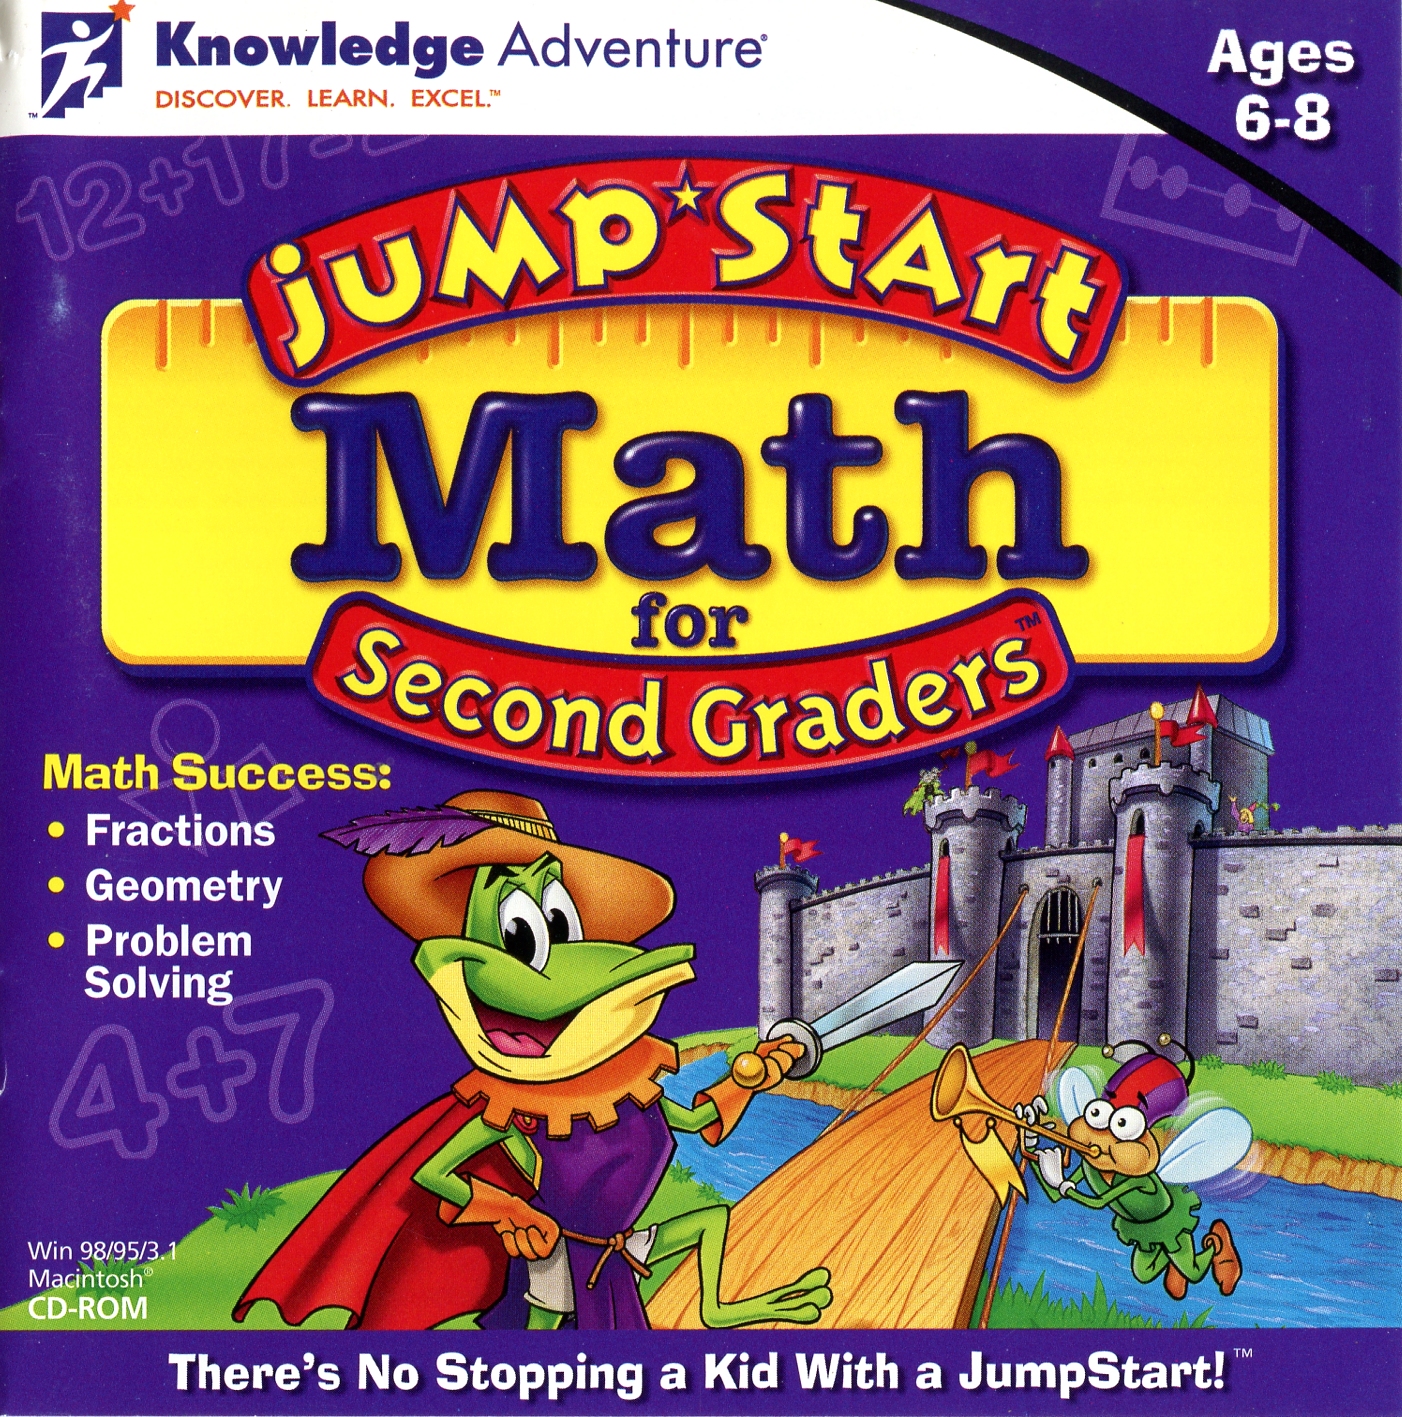 JumpStart Math for Second Graders | JumpStart Wiki | FANDOM powered by